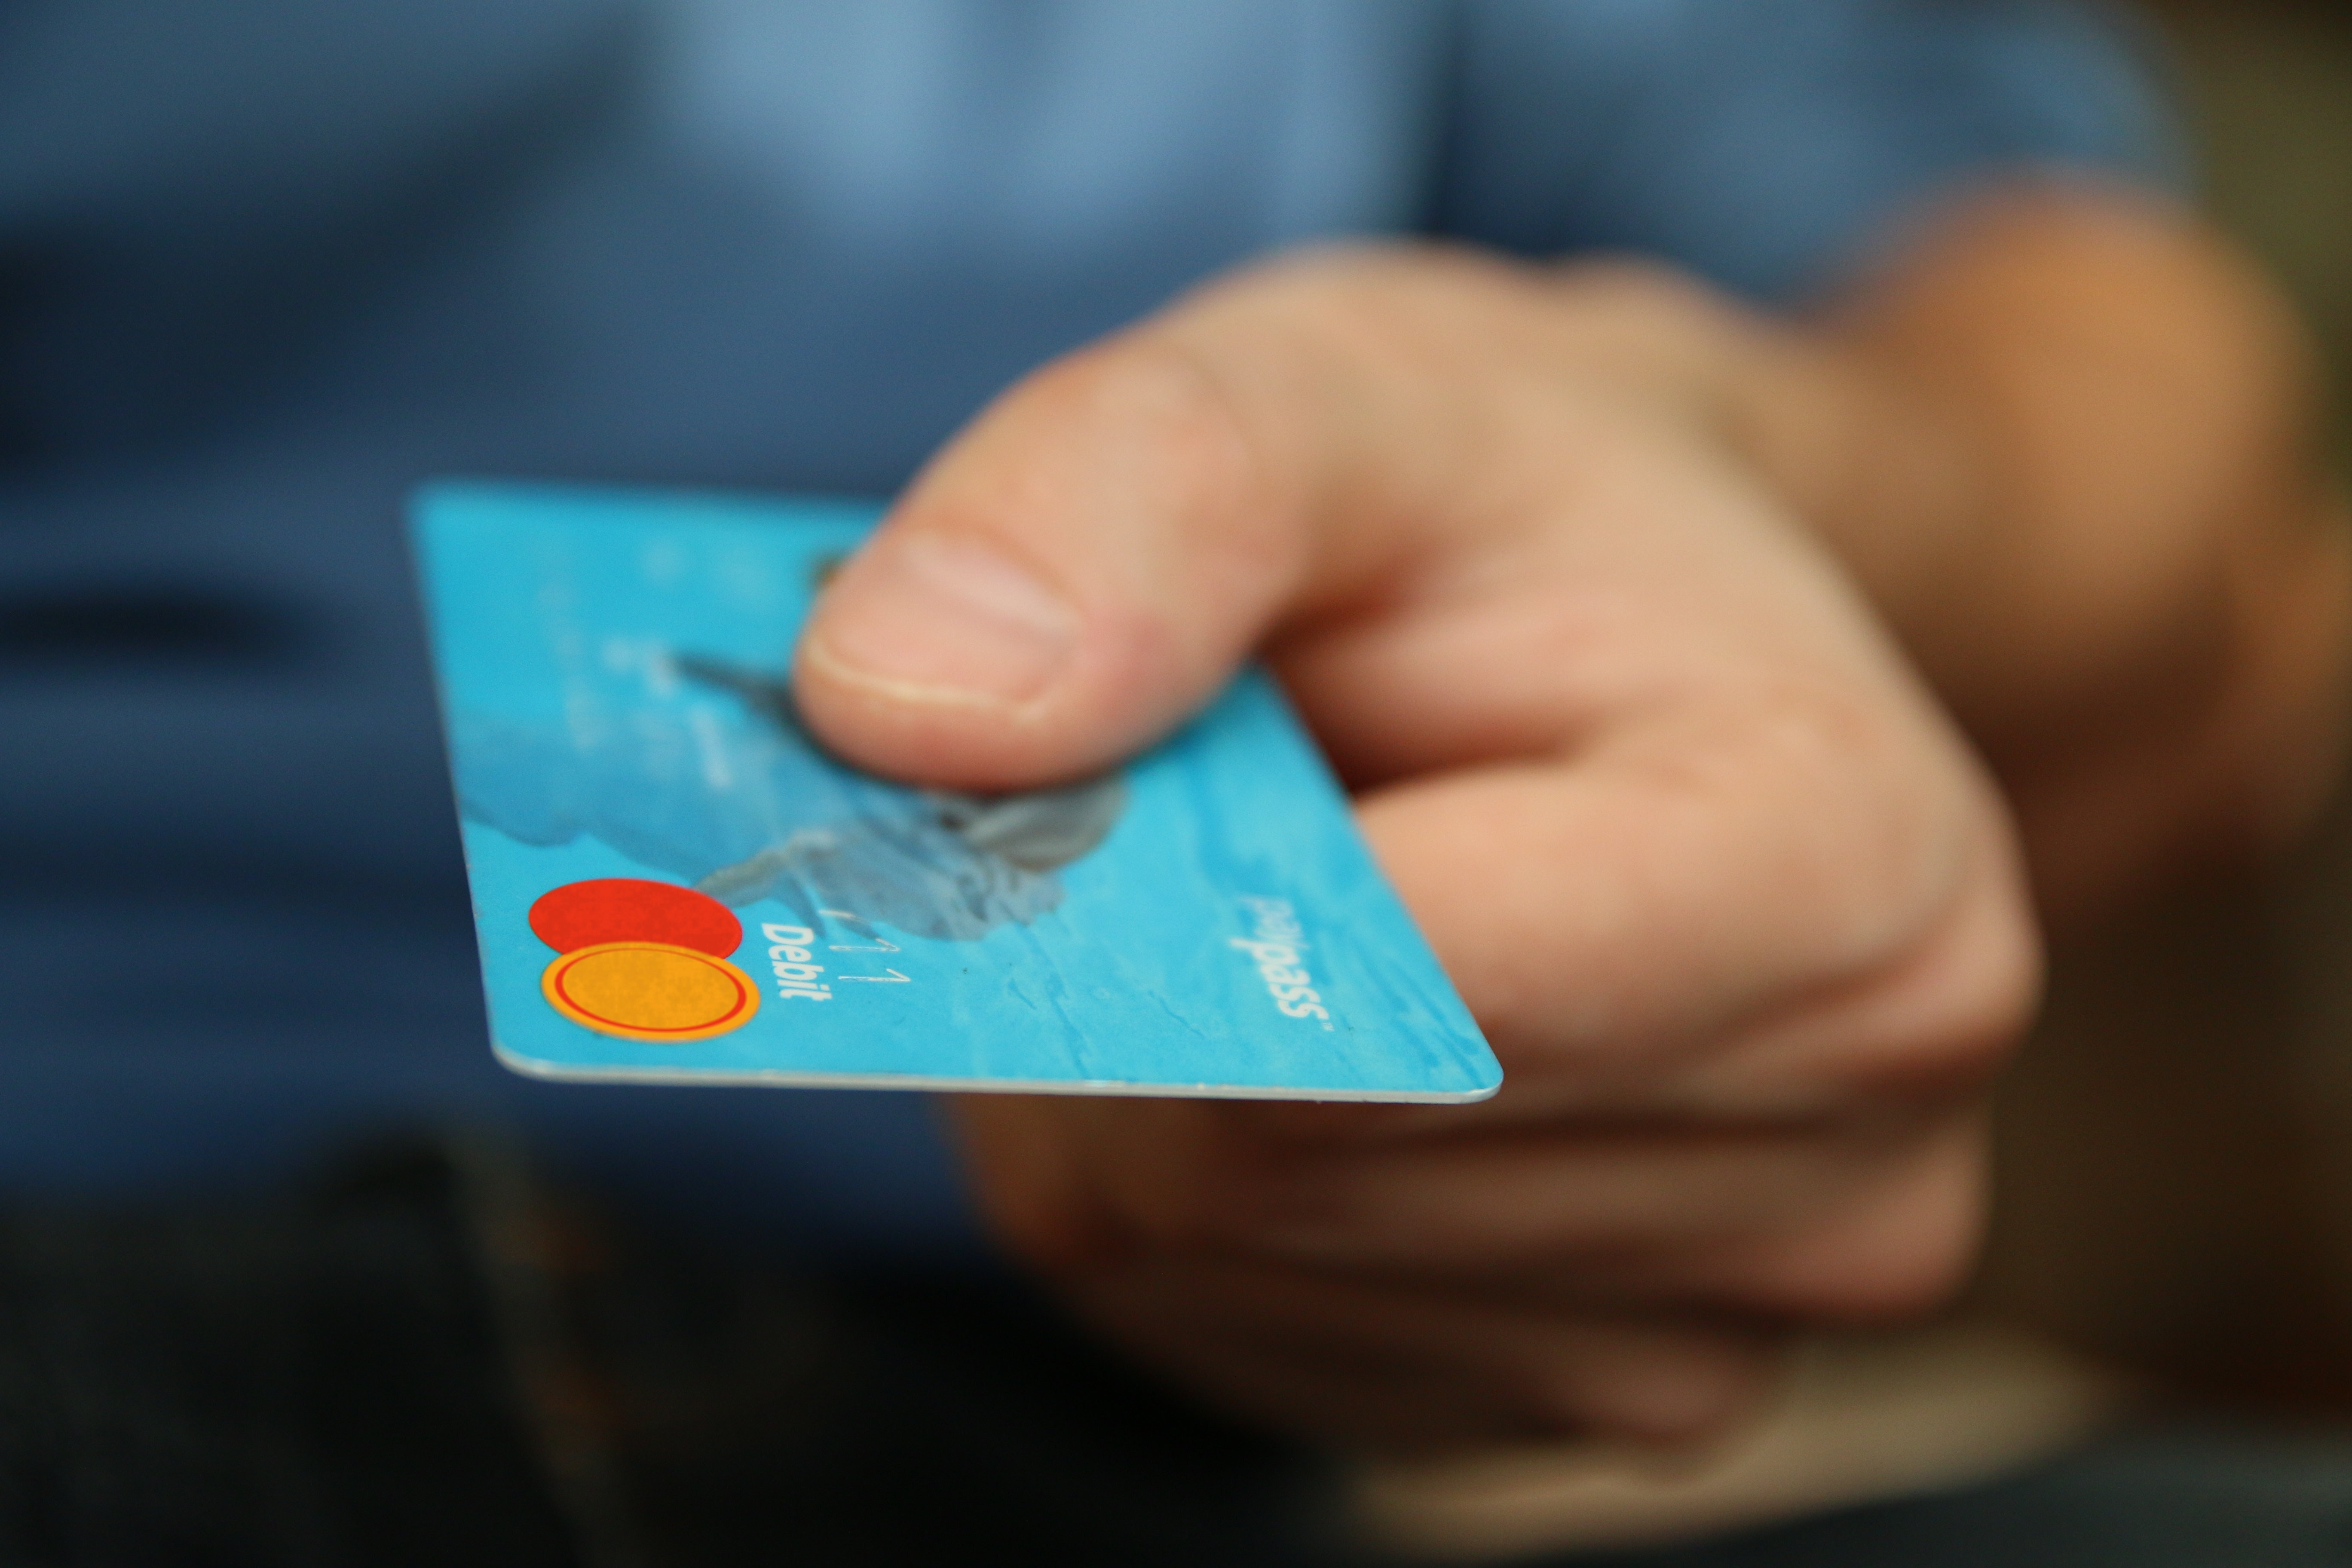 Mas, afinal, como funciona o cartão de crédito N Card? Fonte: Pexels.